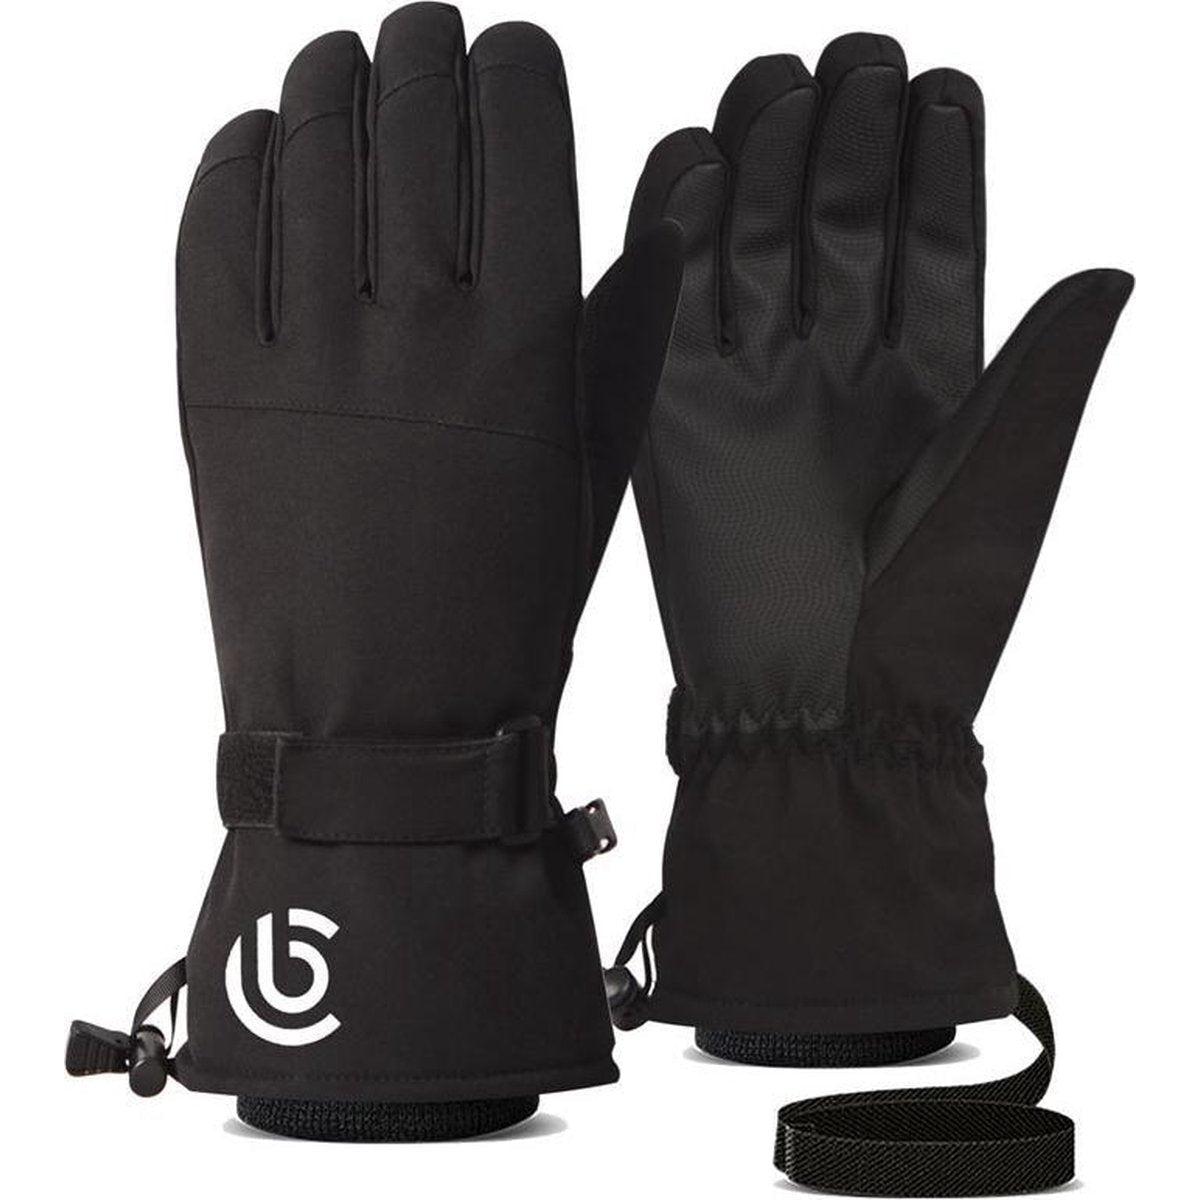 Ski handschoenen - Zwart - Maat L